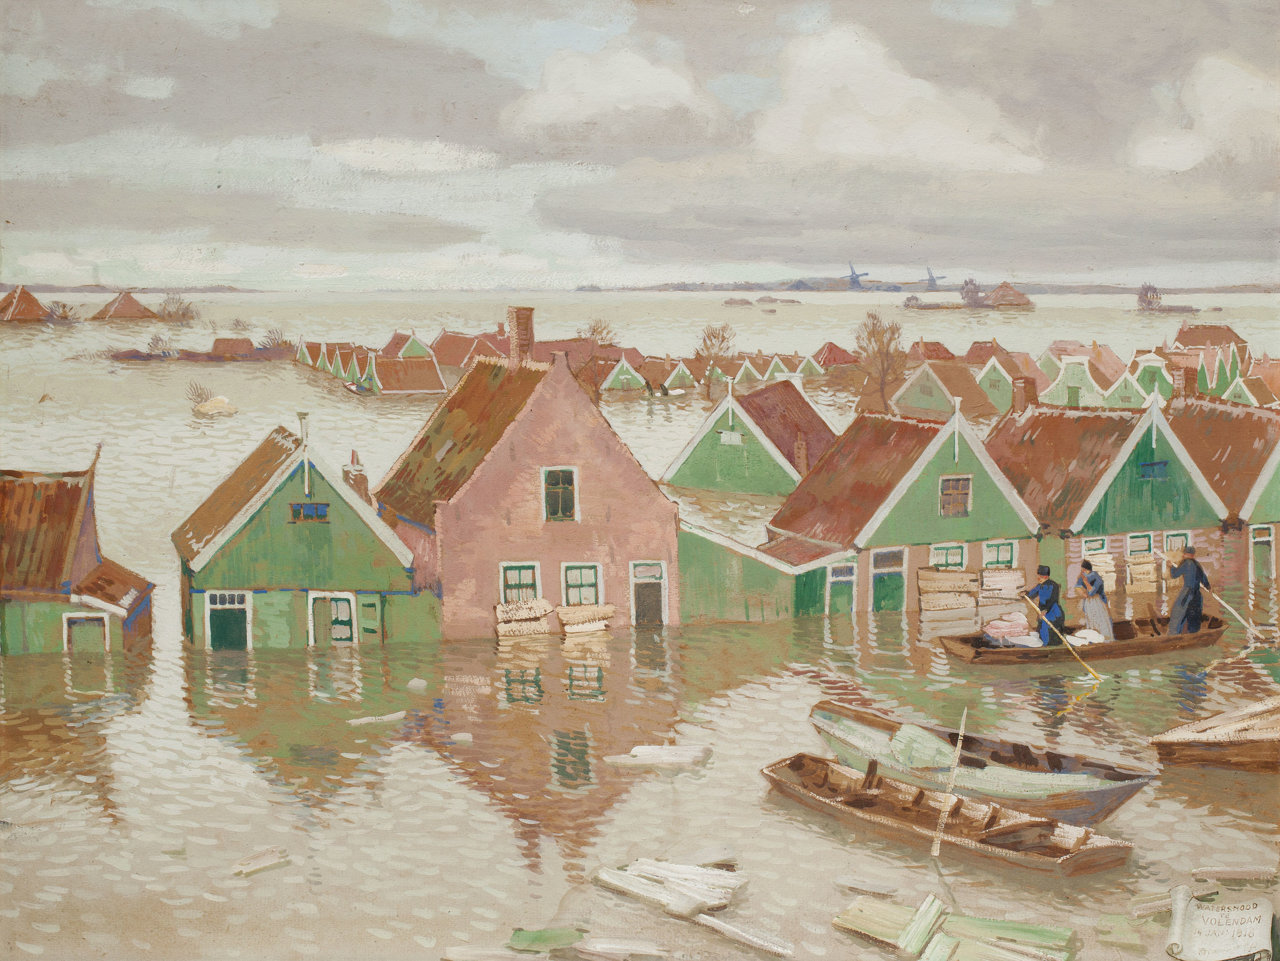 Huizen in Volendam staan onderwater, schilderij